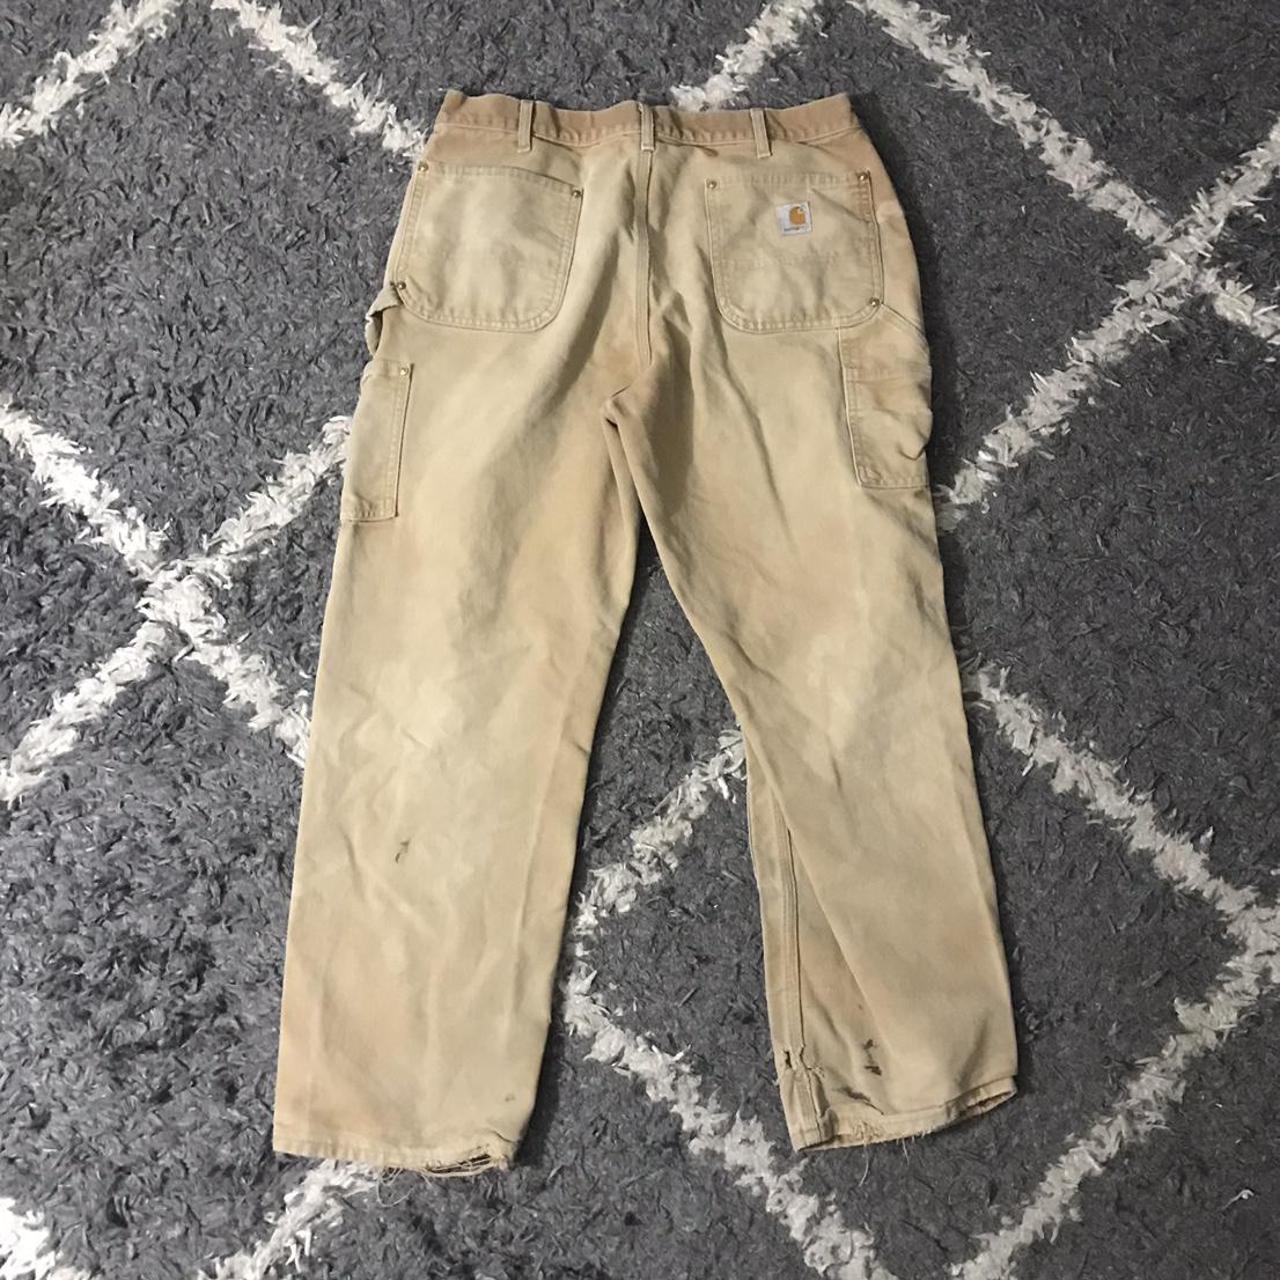 Carhartt Men's Tan and Brown Trousers (2)